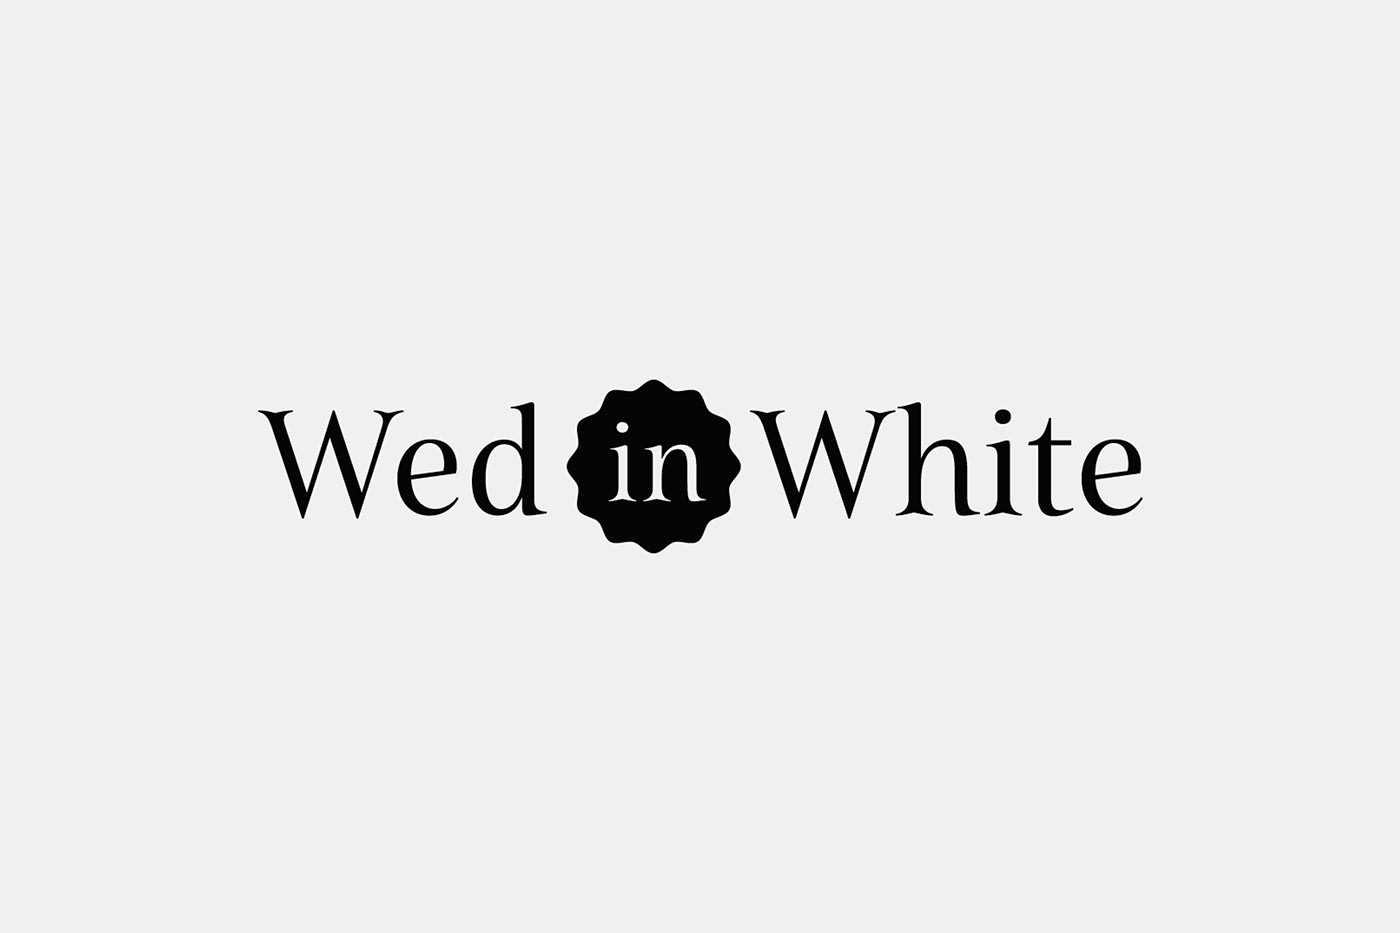 Identidad corporativa para Wed in White